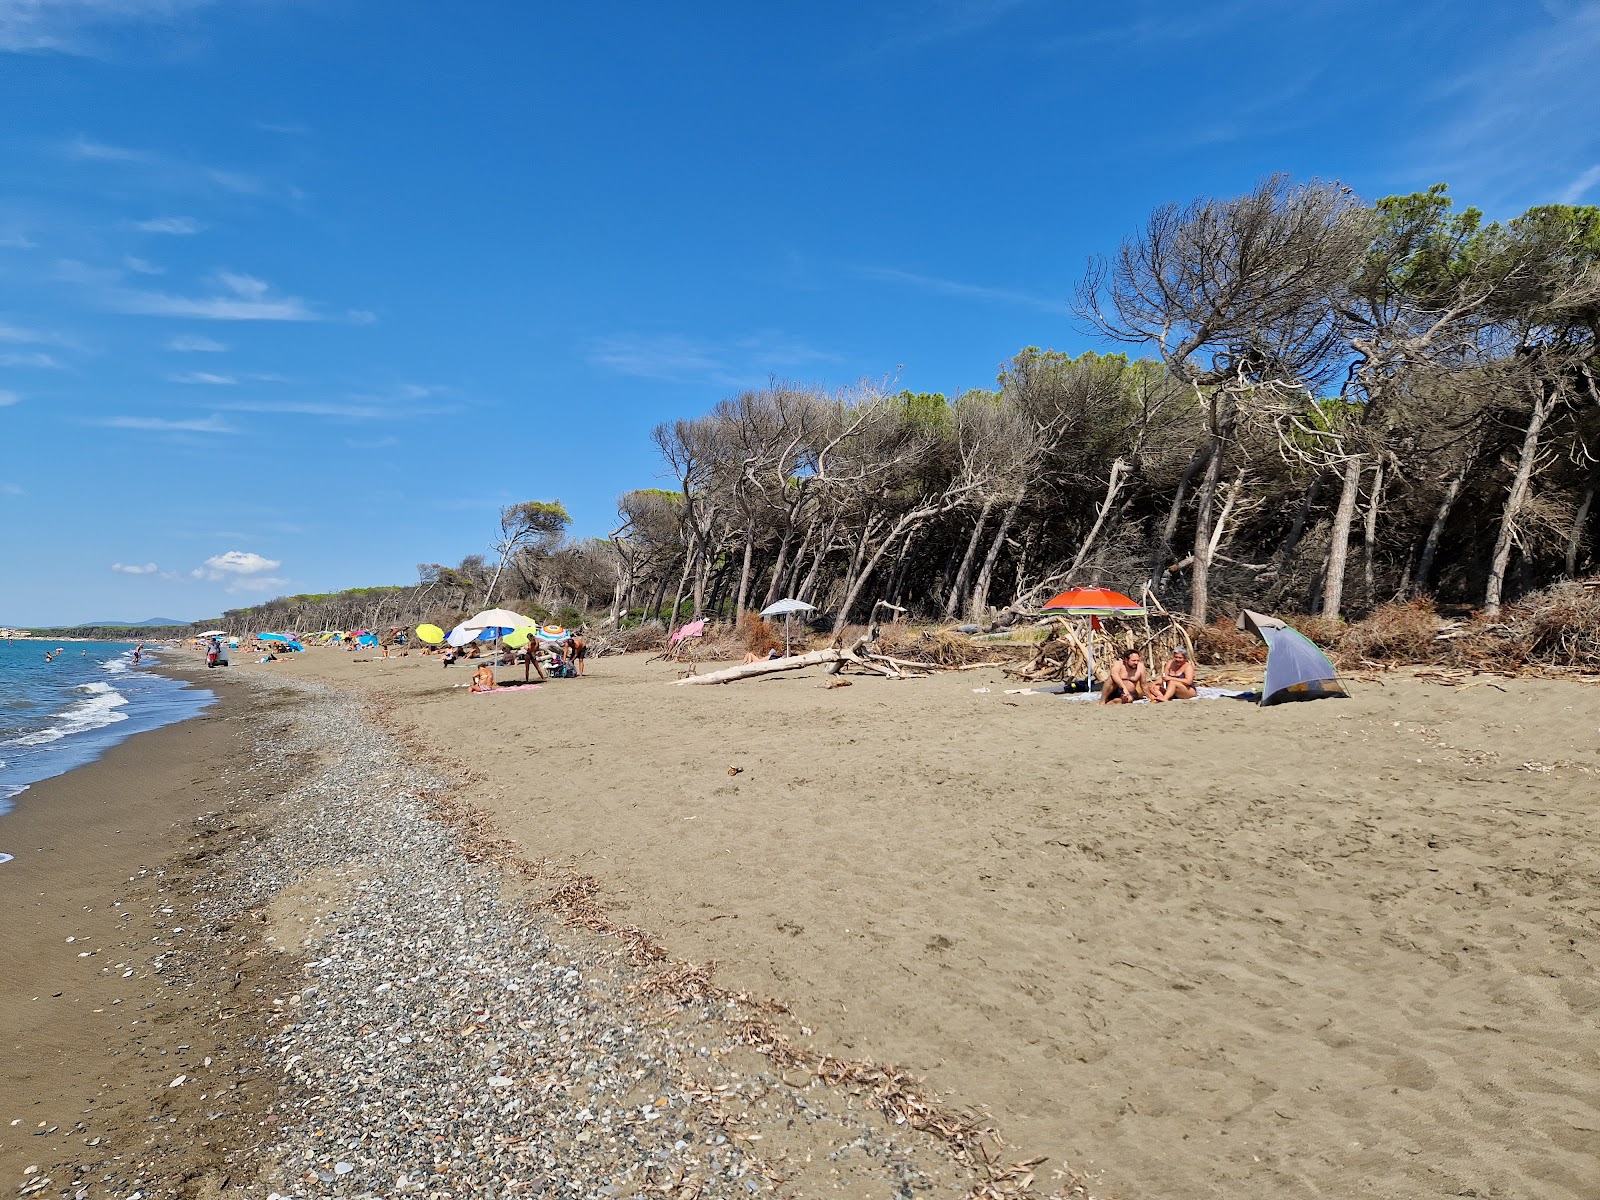 Zdjęcie Bau Beach Le Gorette z powierzchnią jasny piasek